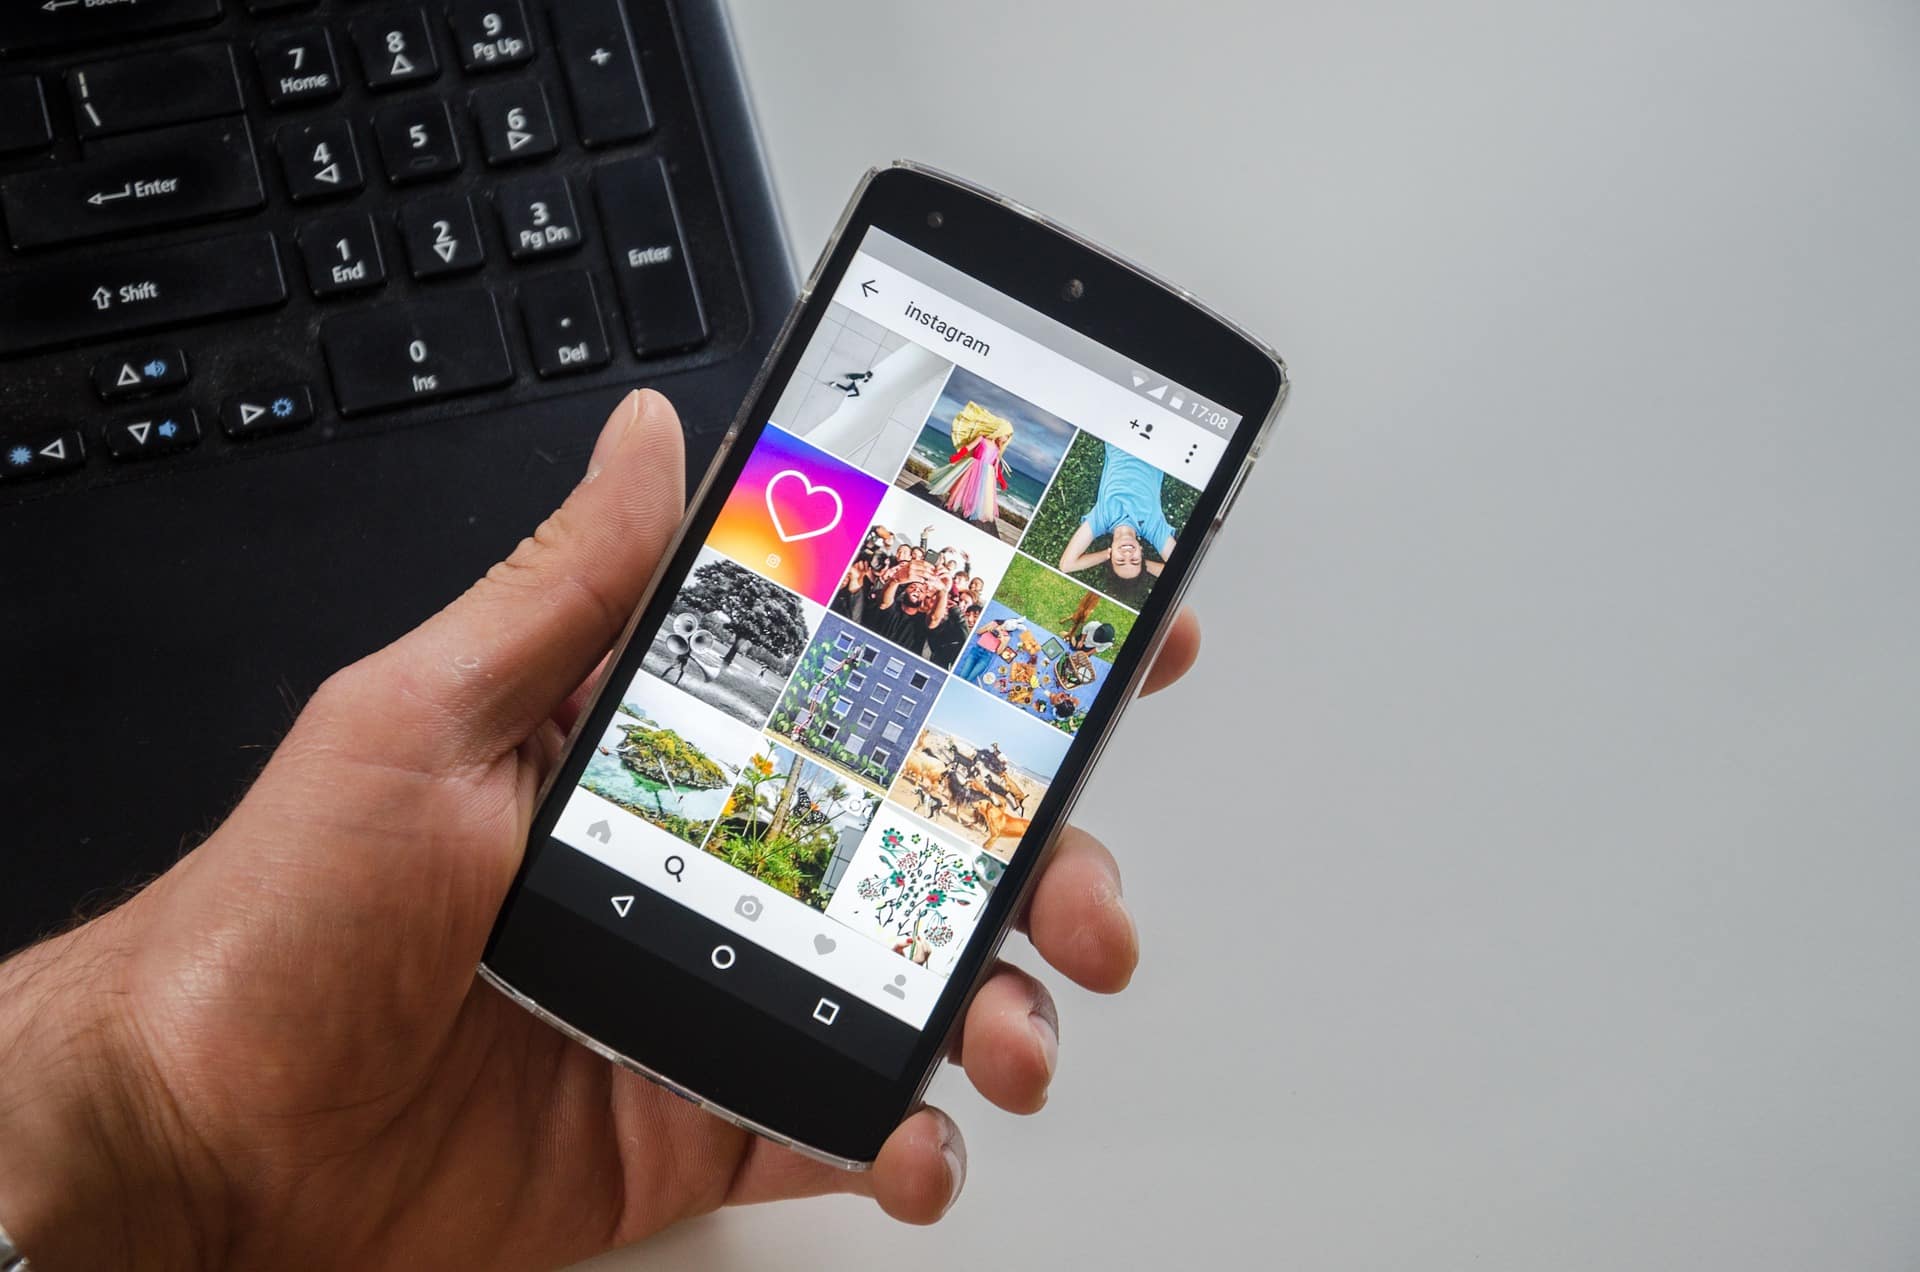 Ansicht eines Smartphones in der Hand - es zeigt einen Instagram Feed